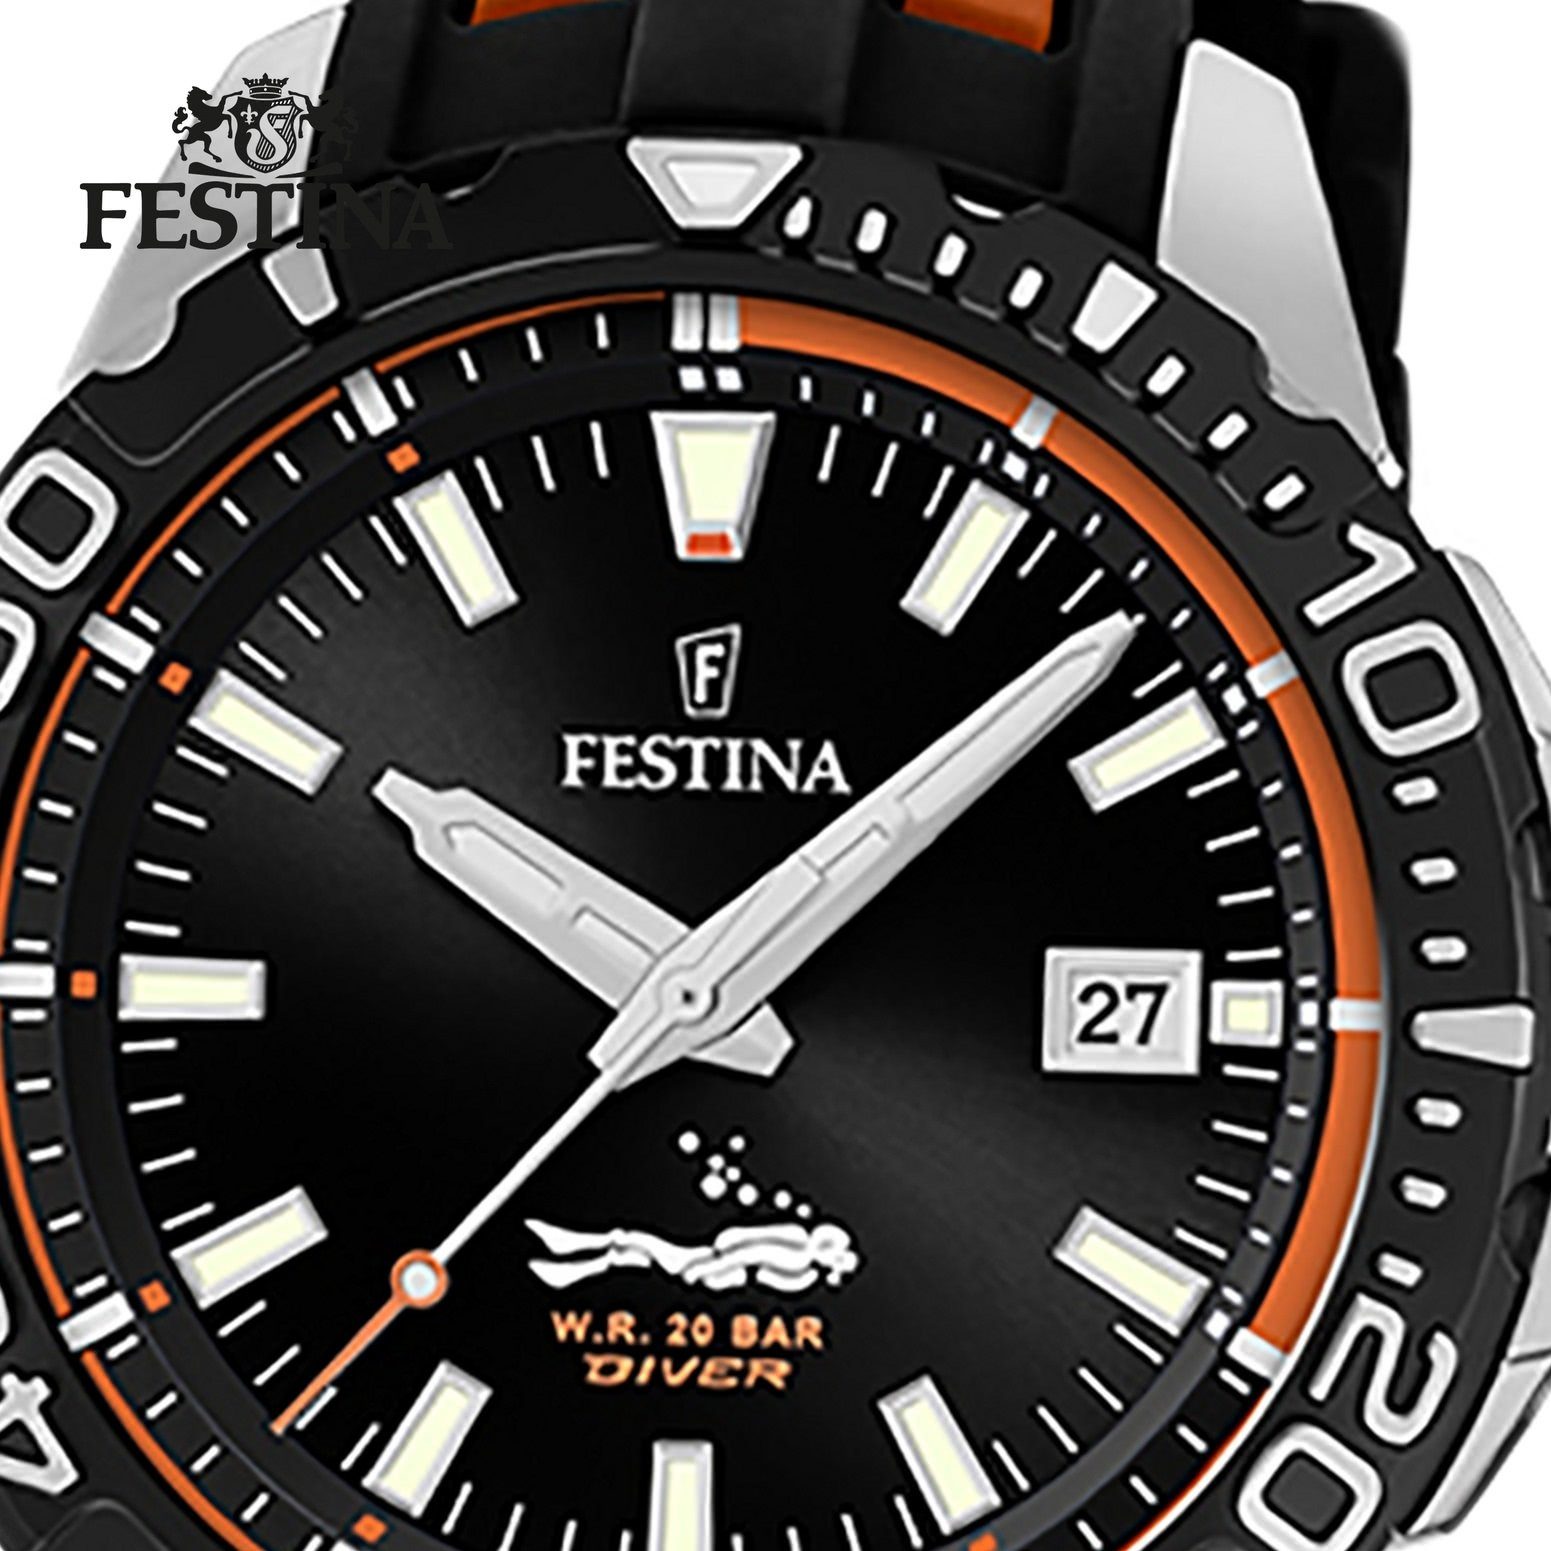 Festina Quarzuhr Festina Herren Armbanduhr F20462/3 PU, schwarz, Herren orange rund, Uhr PURarmband